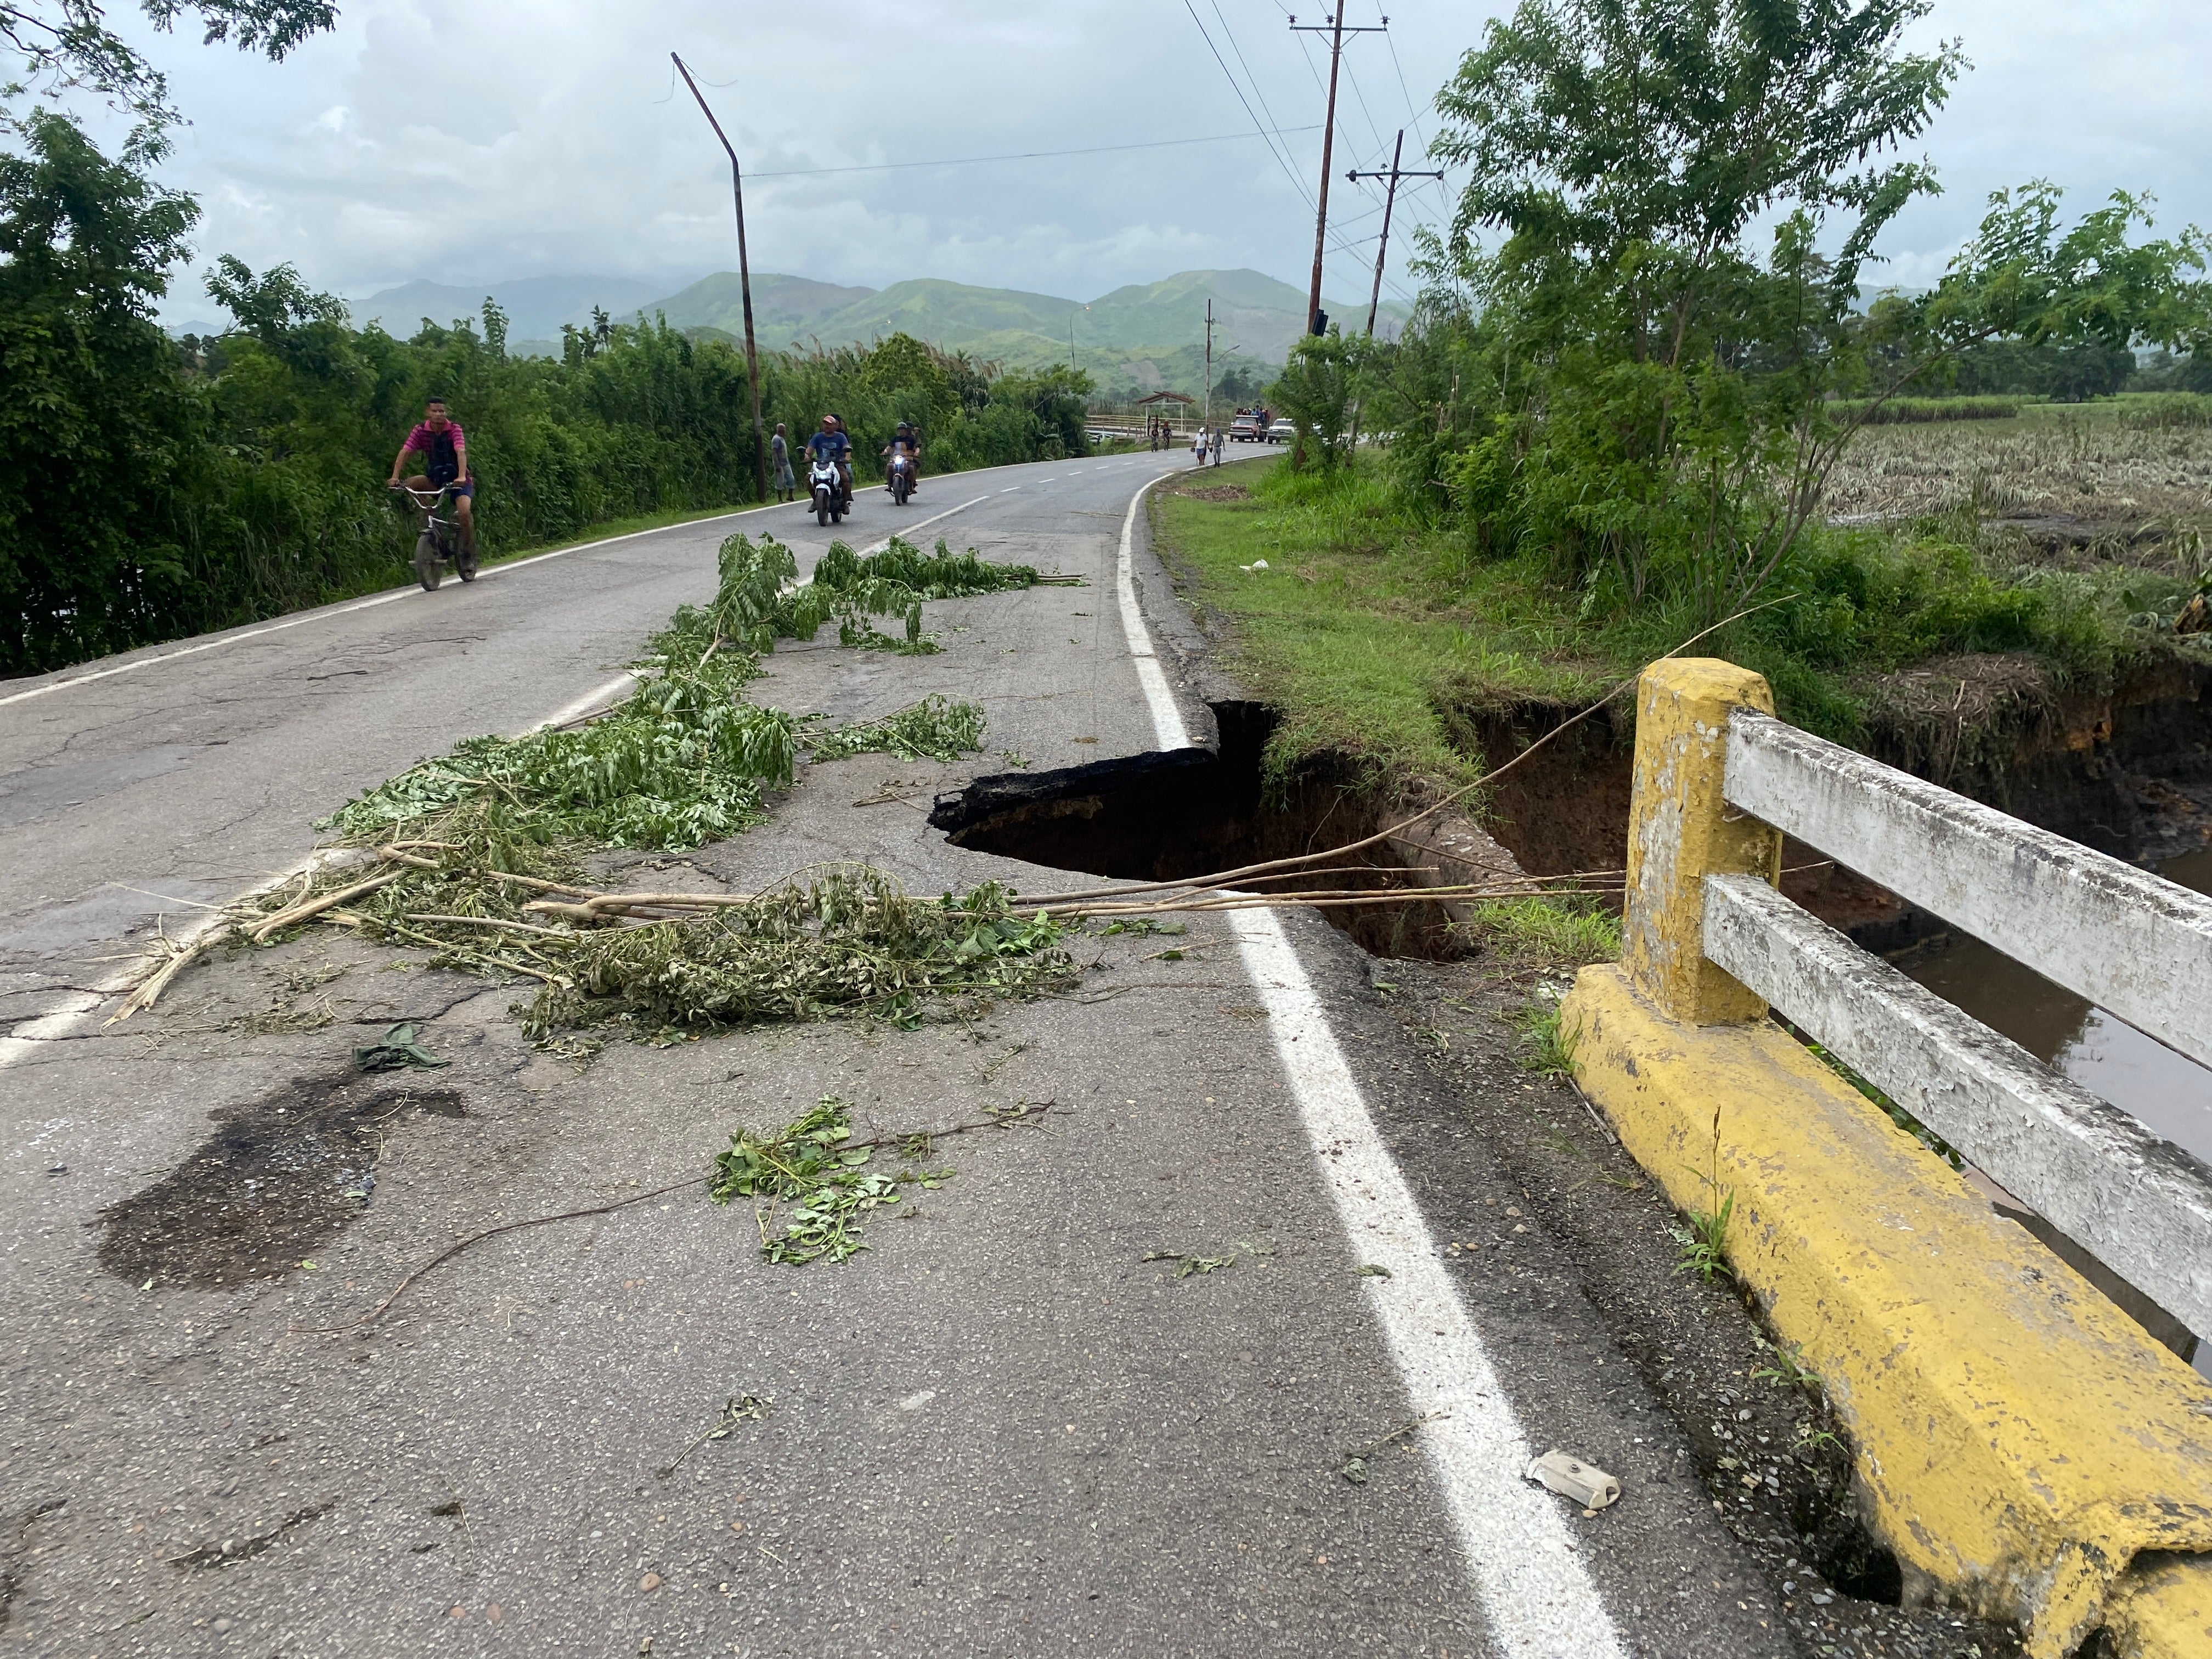 منظر لطريق تضرر بسبب نهر في كوماناكوا، ولاية سوكري، فنزويلا بعد مرور إعصار بيريل بسبب الأمطار الغزيرة.